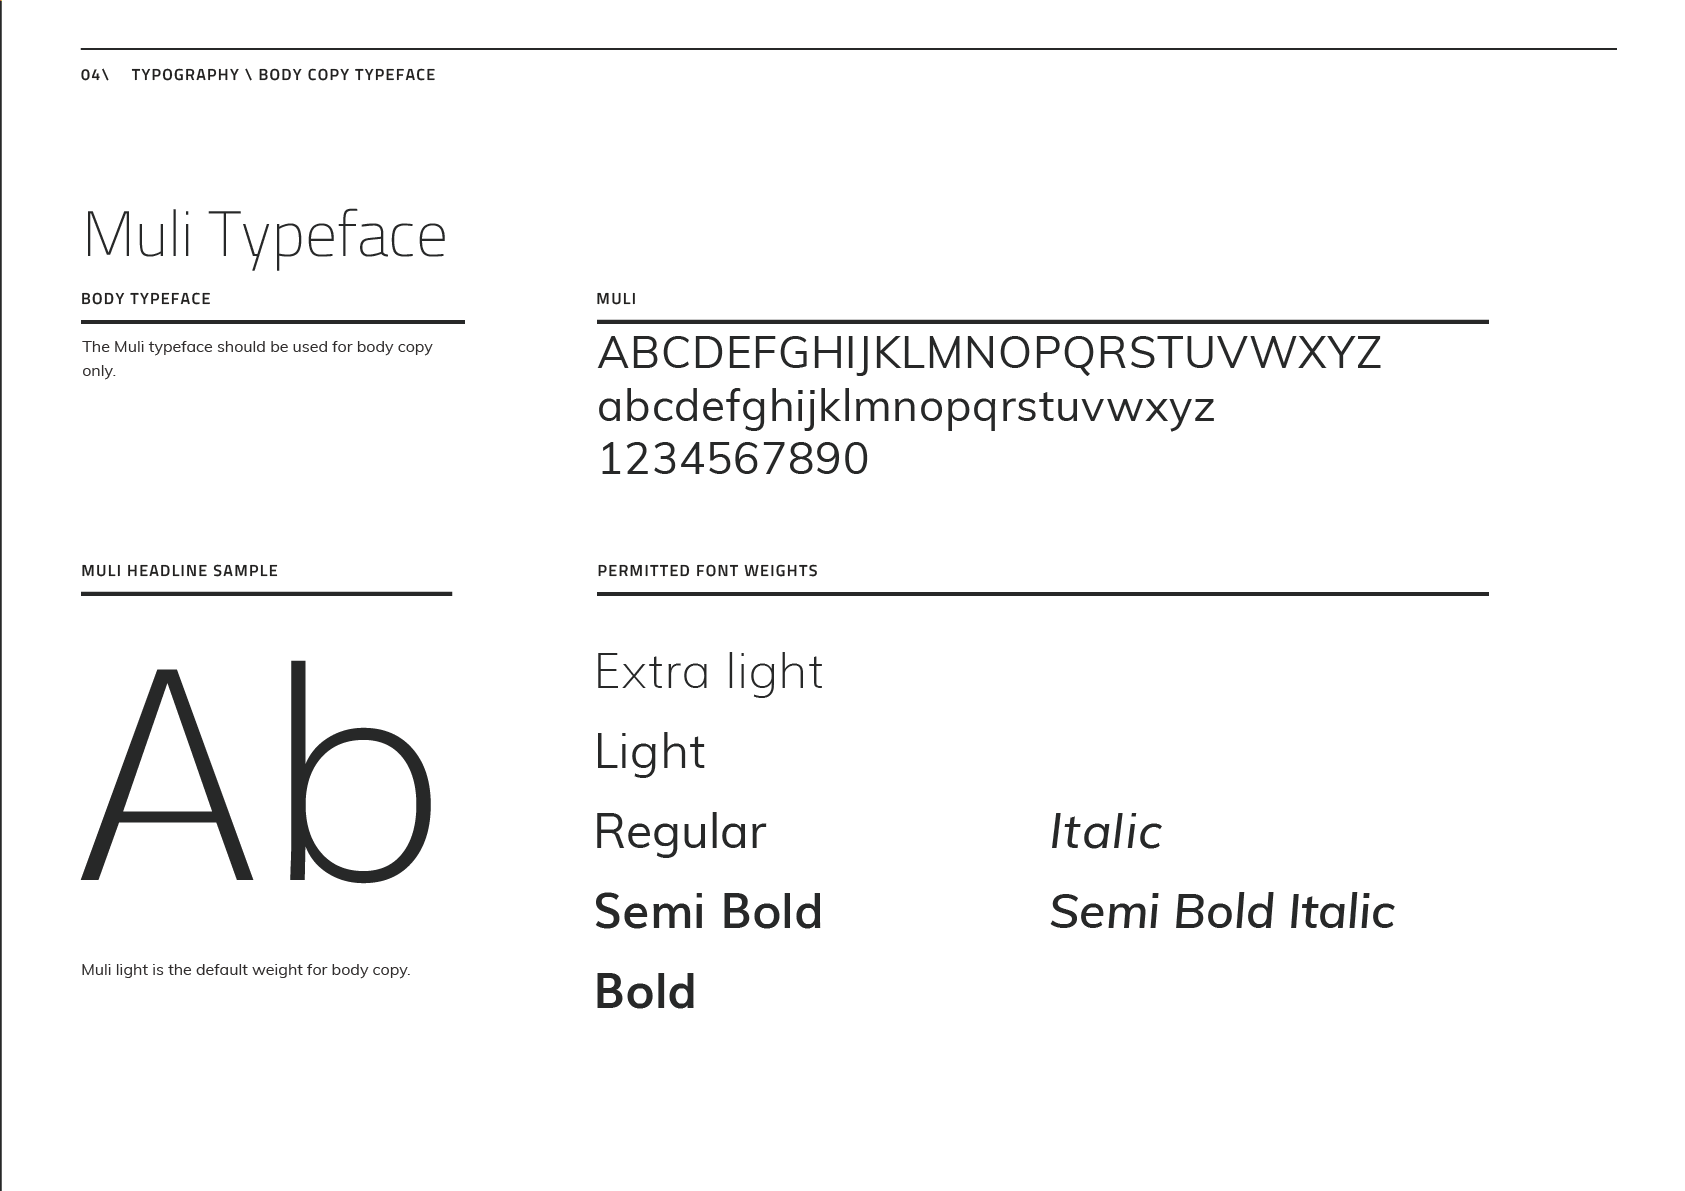 The Muli Typeface